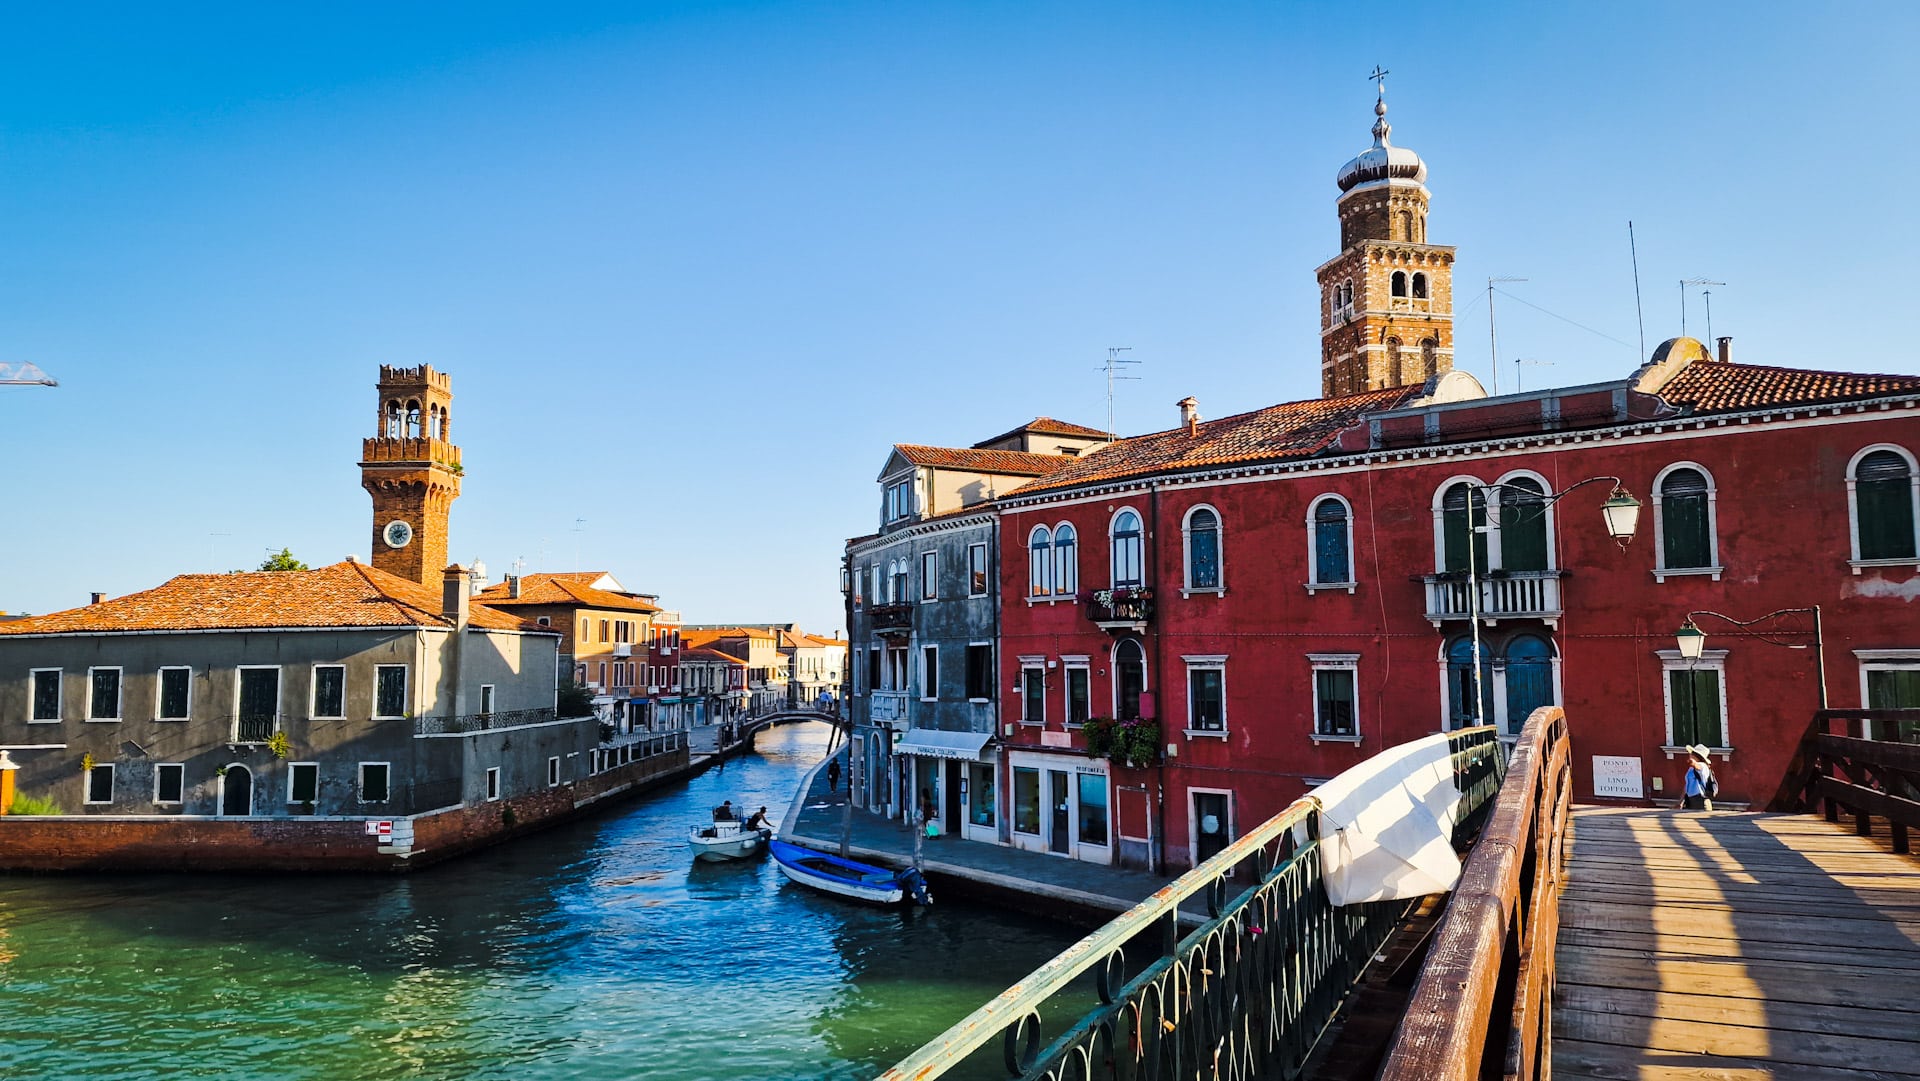 La isla de Murano ofrece una alternativa tranquila y romántica a los céntricos barrios venecianos